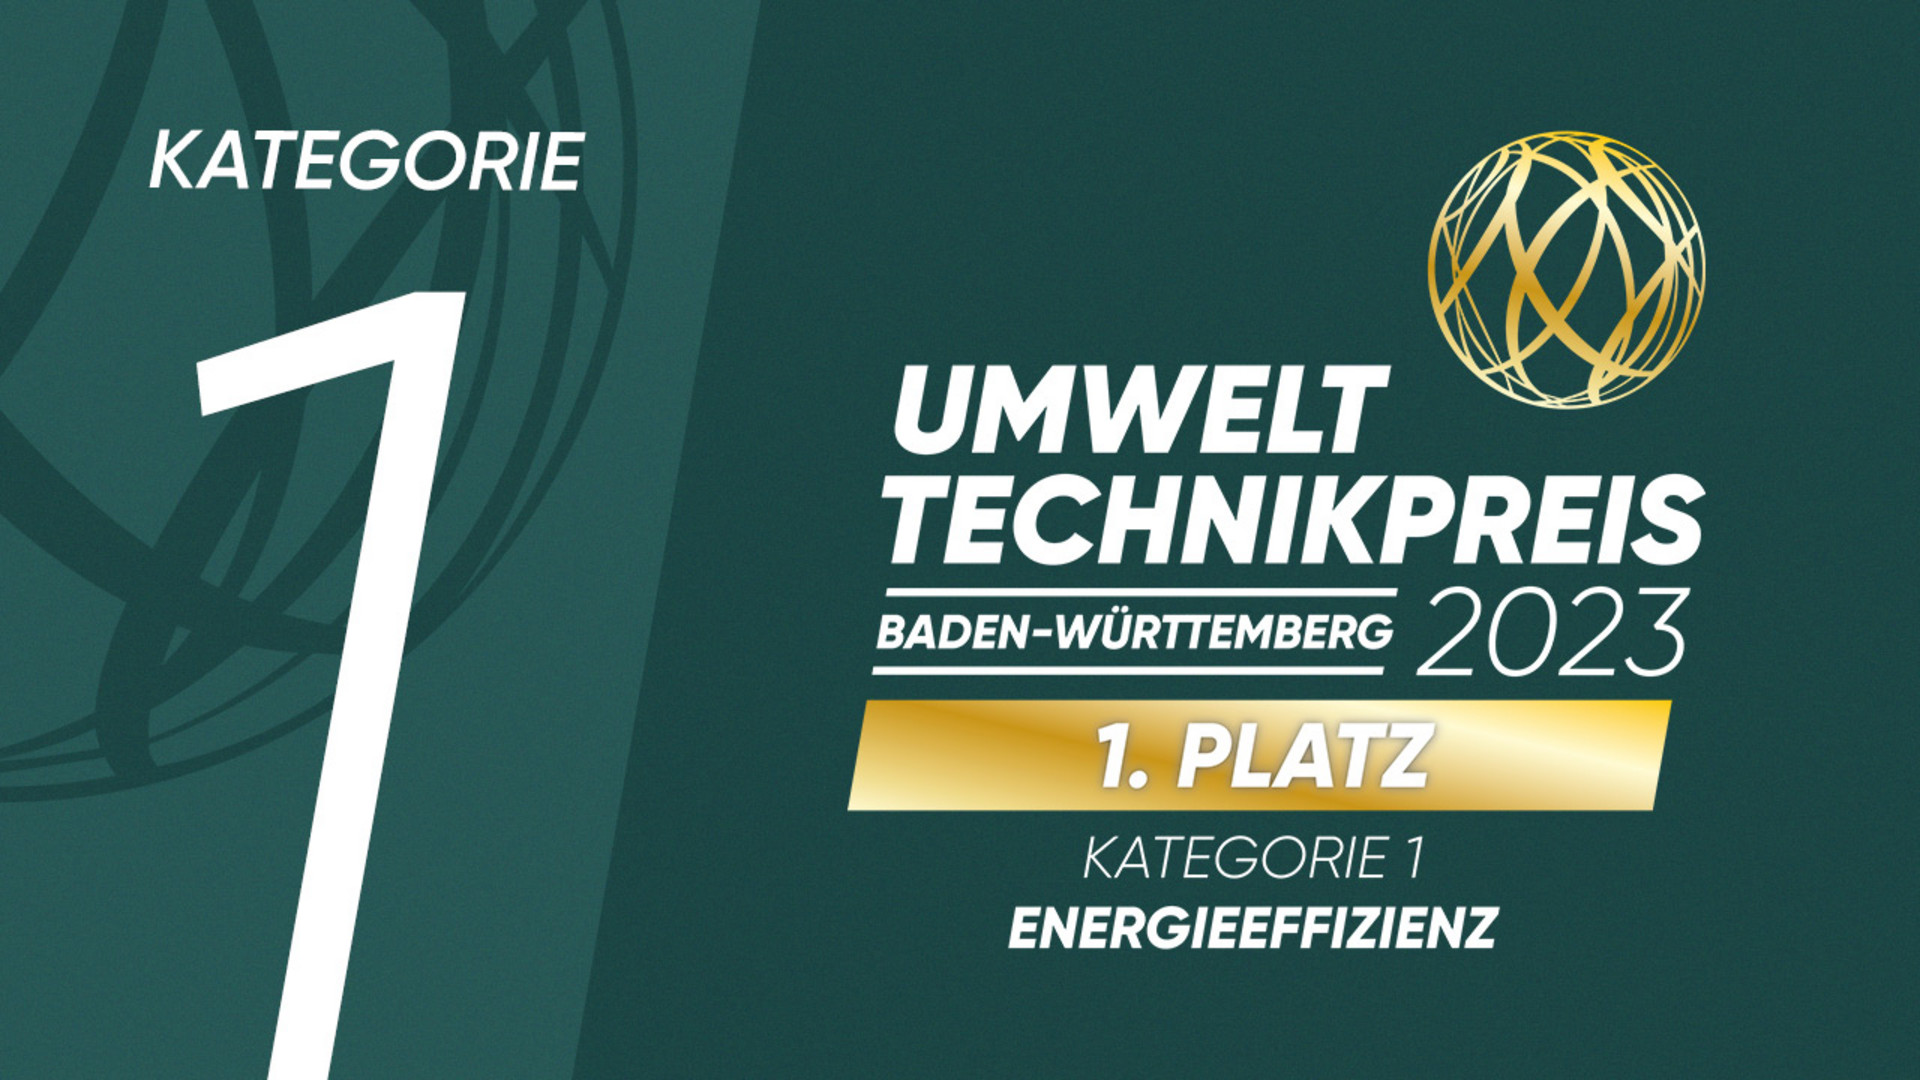 Umwelttechnikpreis Baden-Württemberg 2023: 1. Platz in der Kategorie 1 „Energieeffizienz“